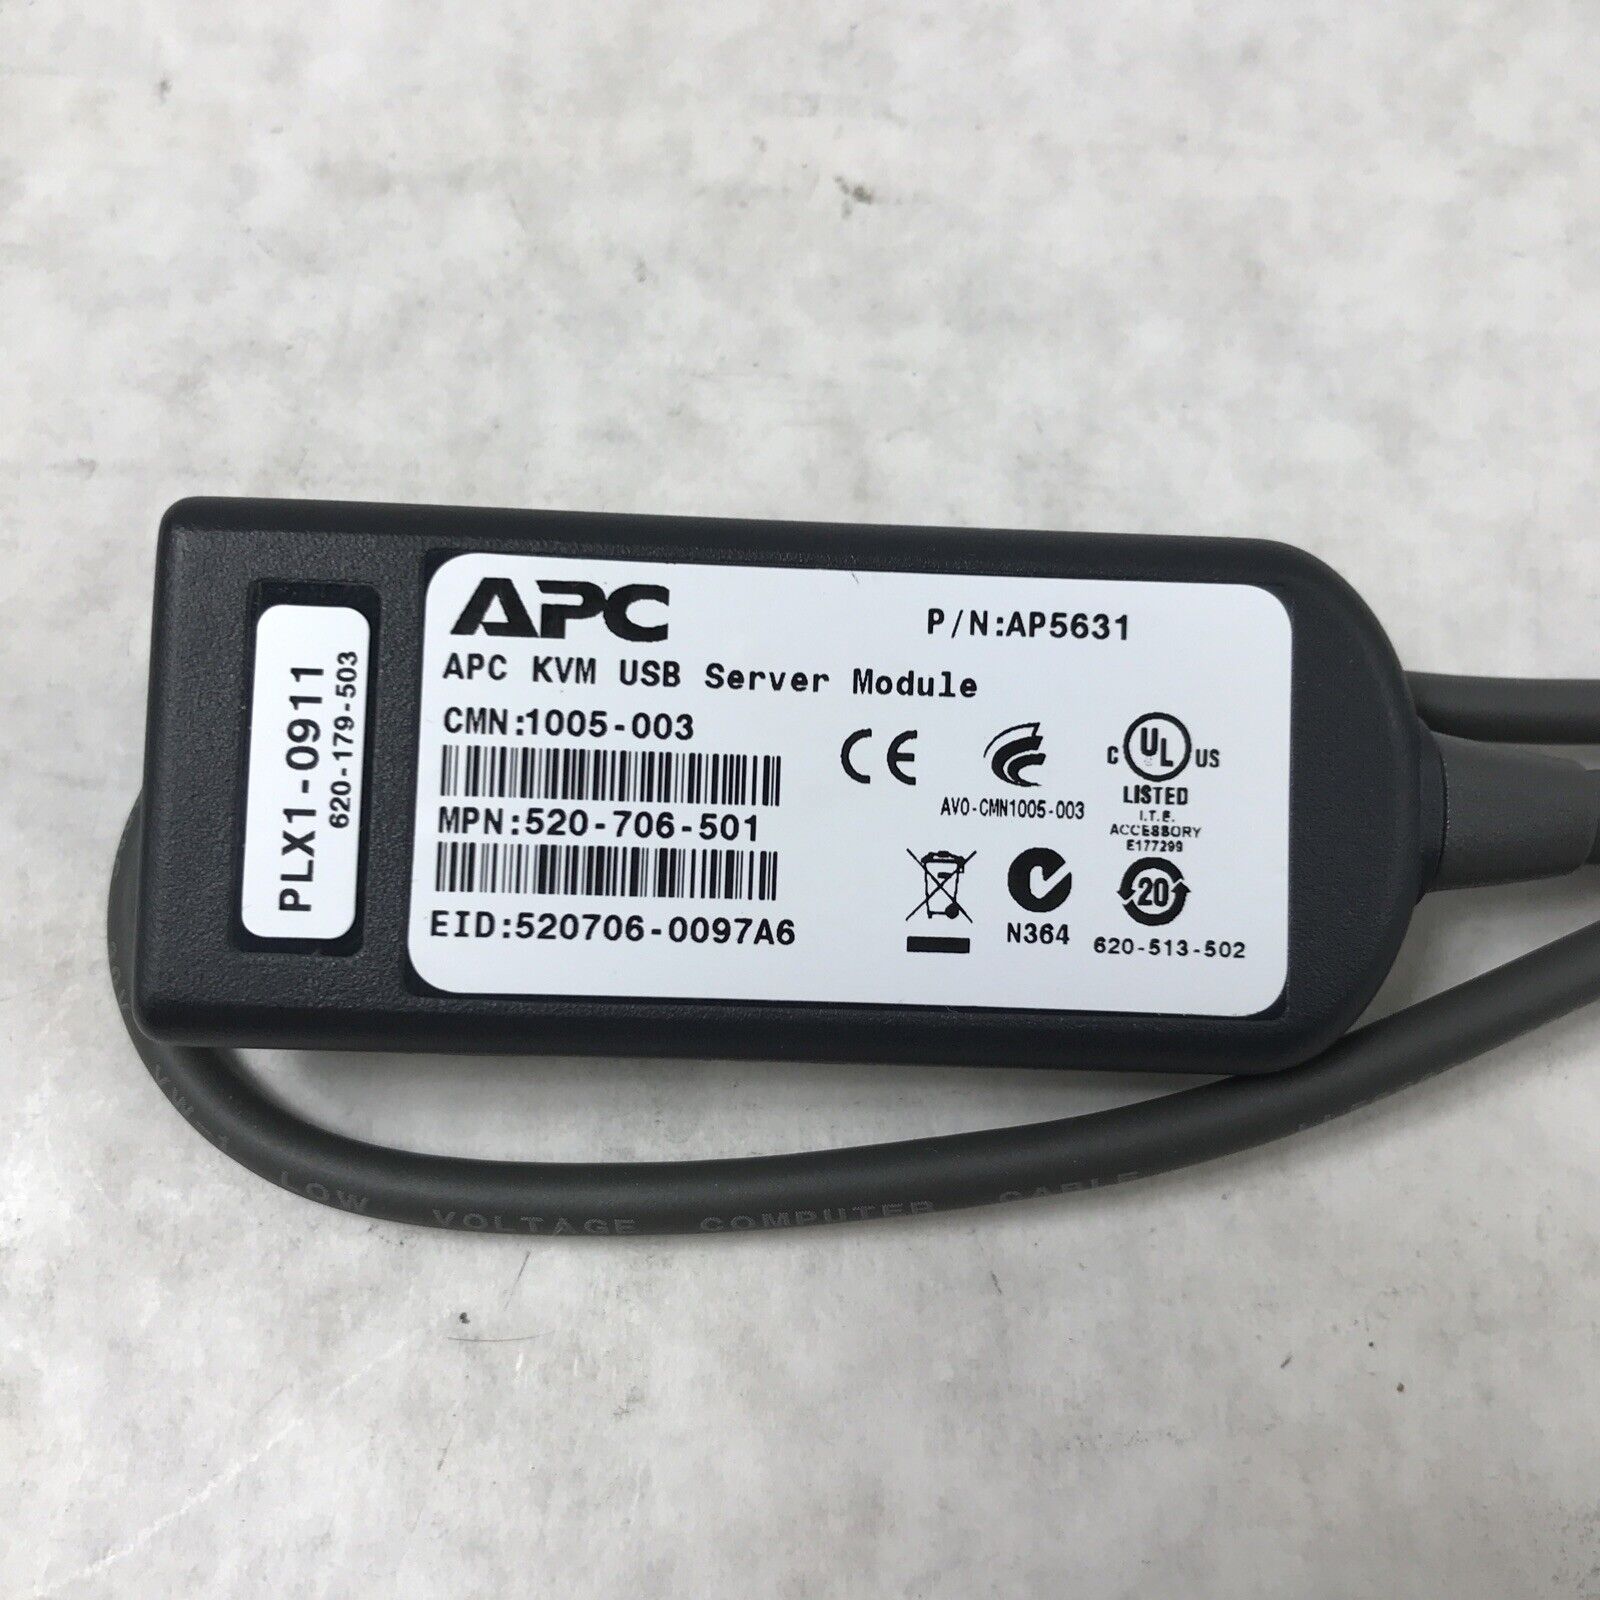 Lot of 10 APC AP5631 KVM USB Server Module 520-706-501 PLX1-1909